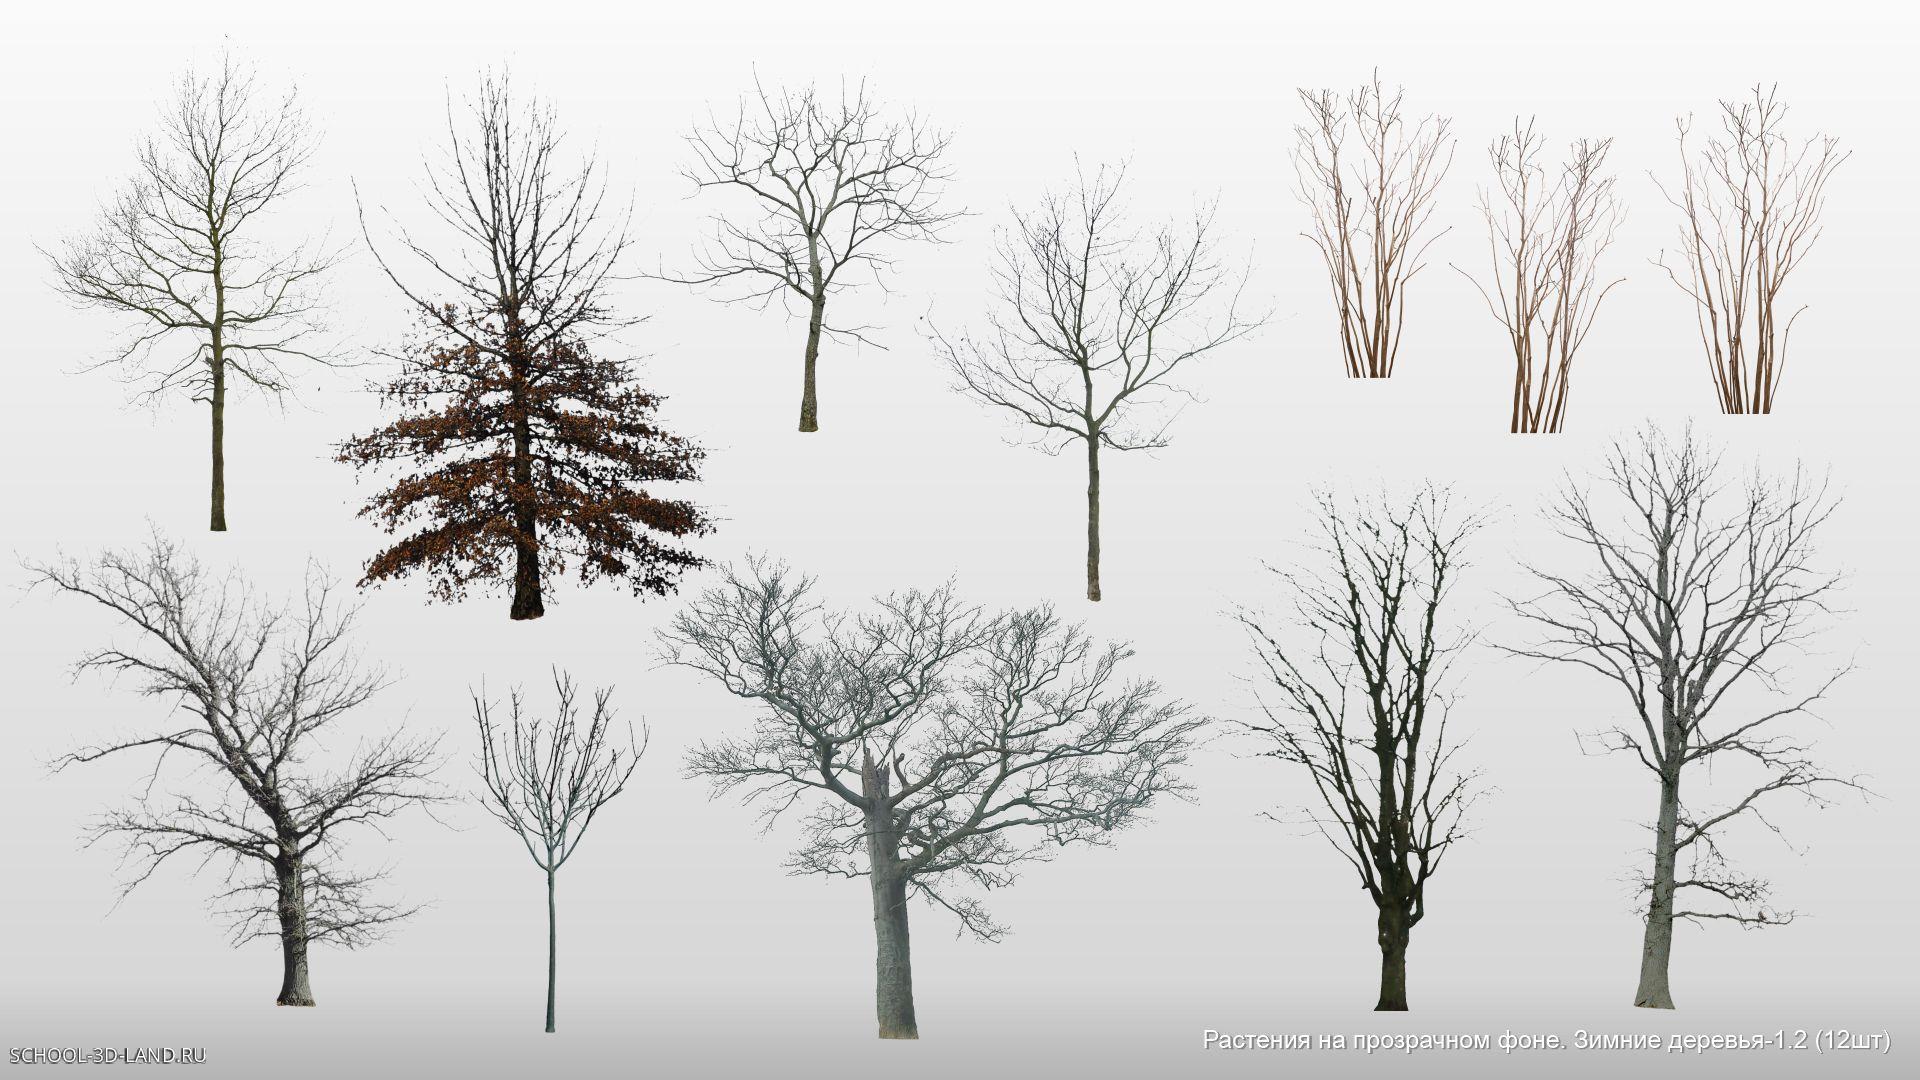 Растения на прозрачном фоне. Зимние деревья. Сборник 1.2 (12шт)